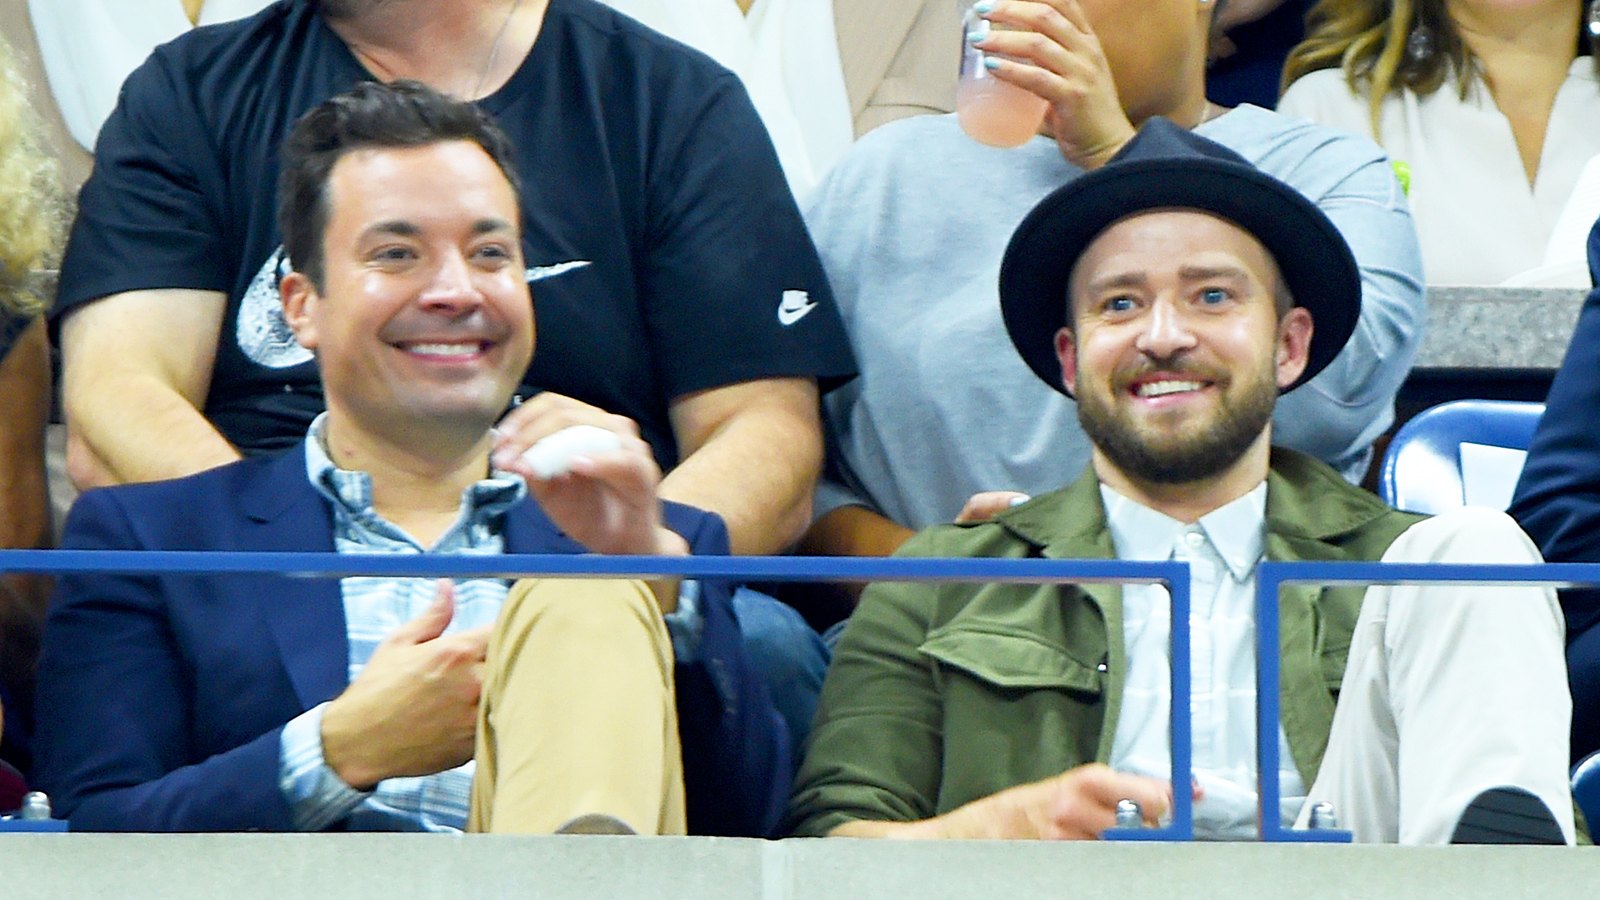 US Open Celebrities Jimmy Fallon, Justin Timberlake, Donald Trump